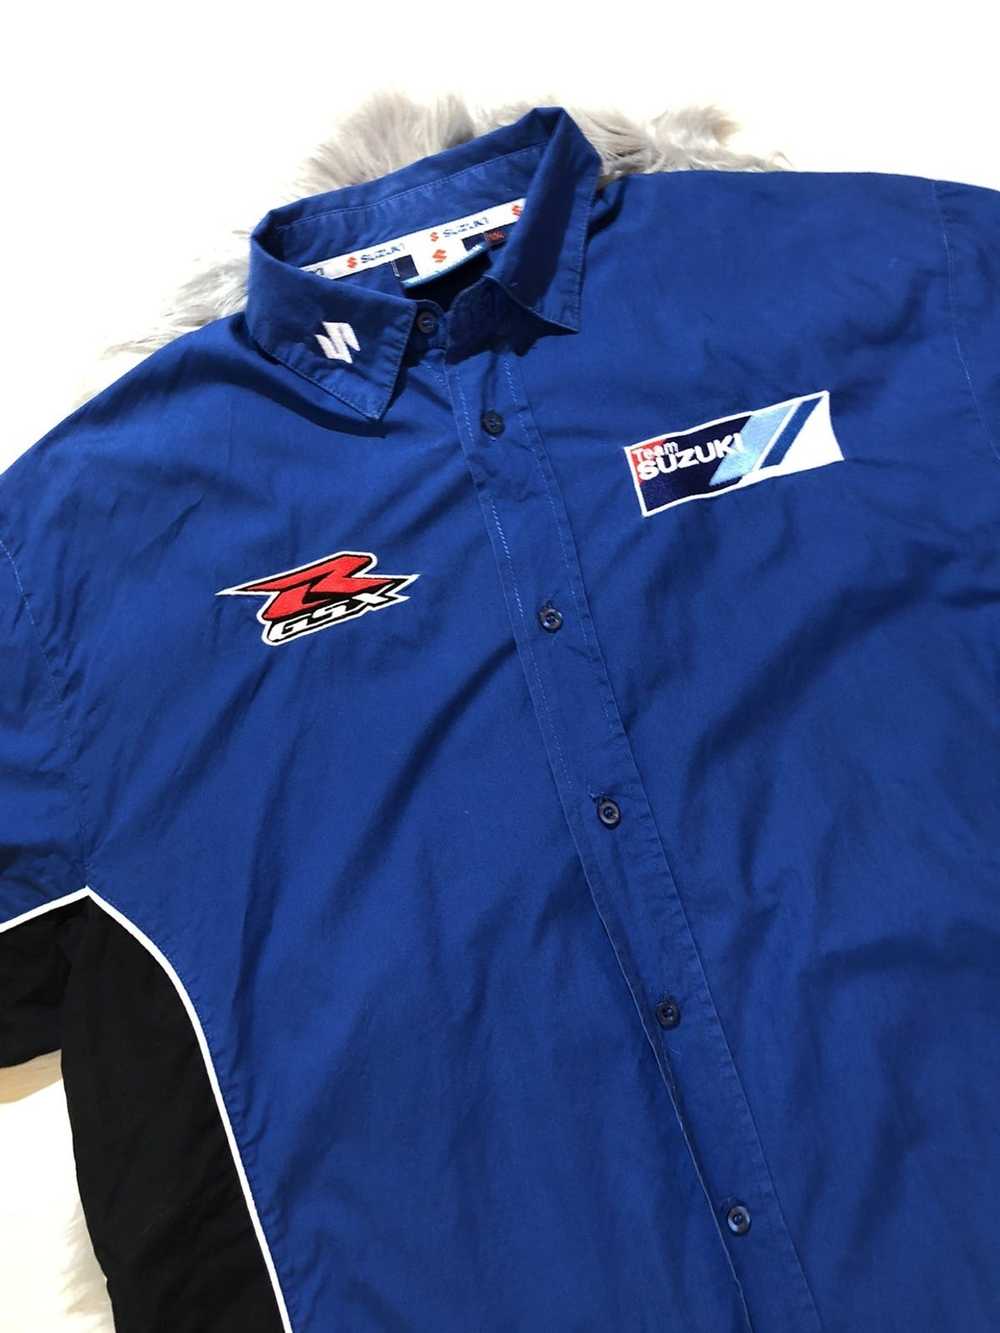 Gear For Sports × Racing Suzuki Shirt - image 7